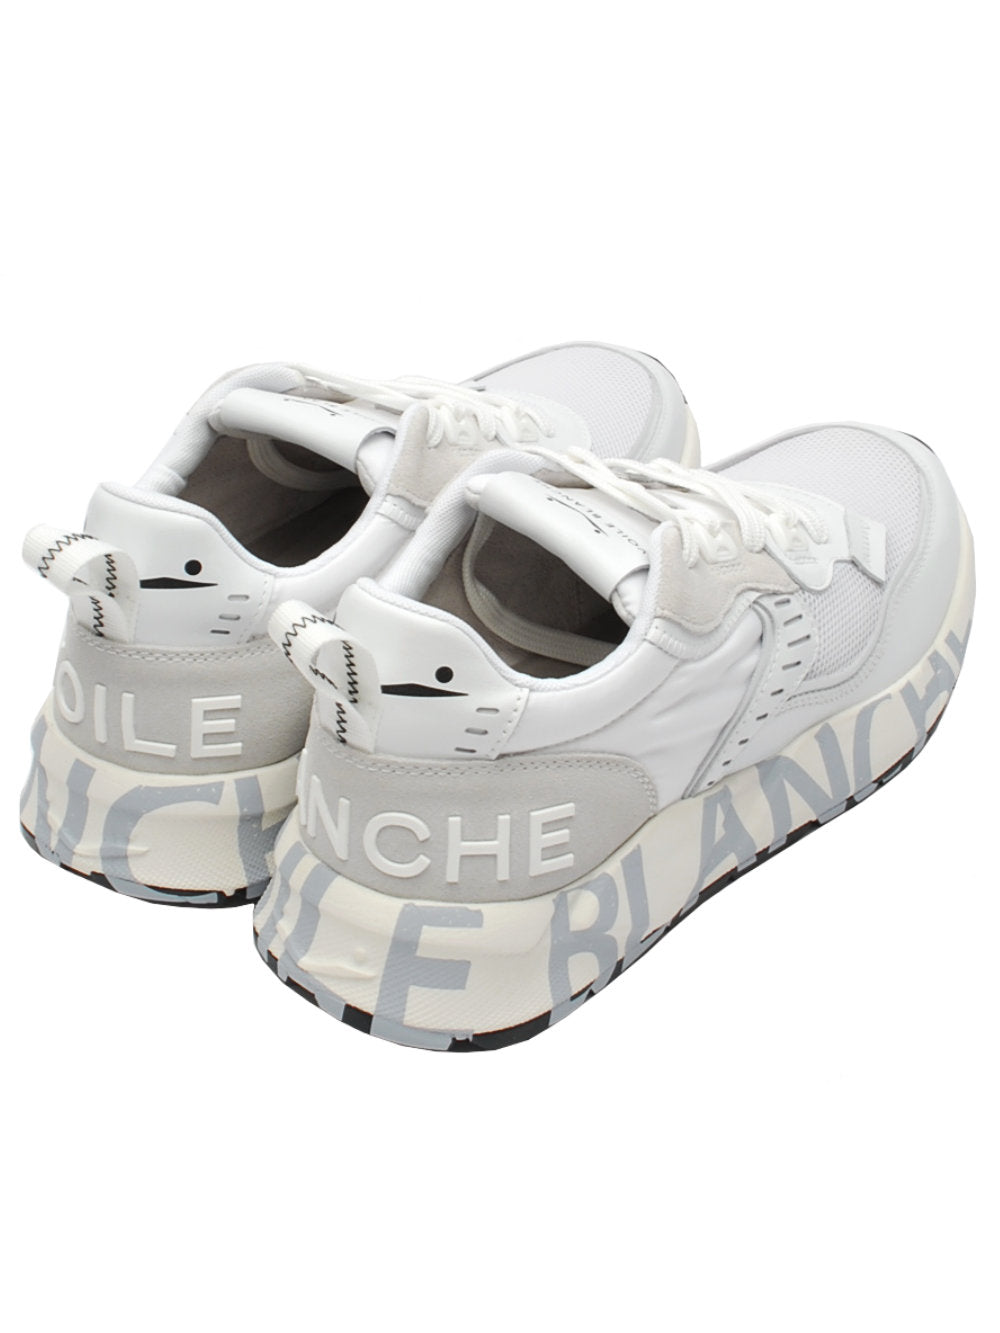 Voile Blanche sneaker club01 5926 bianco pe24